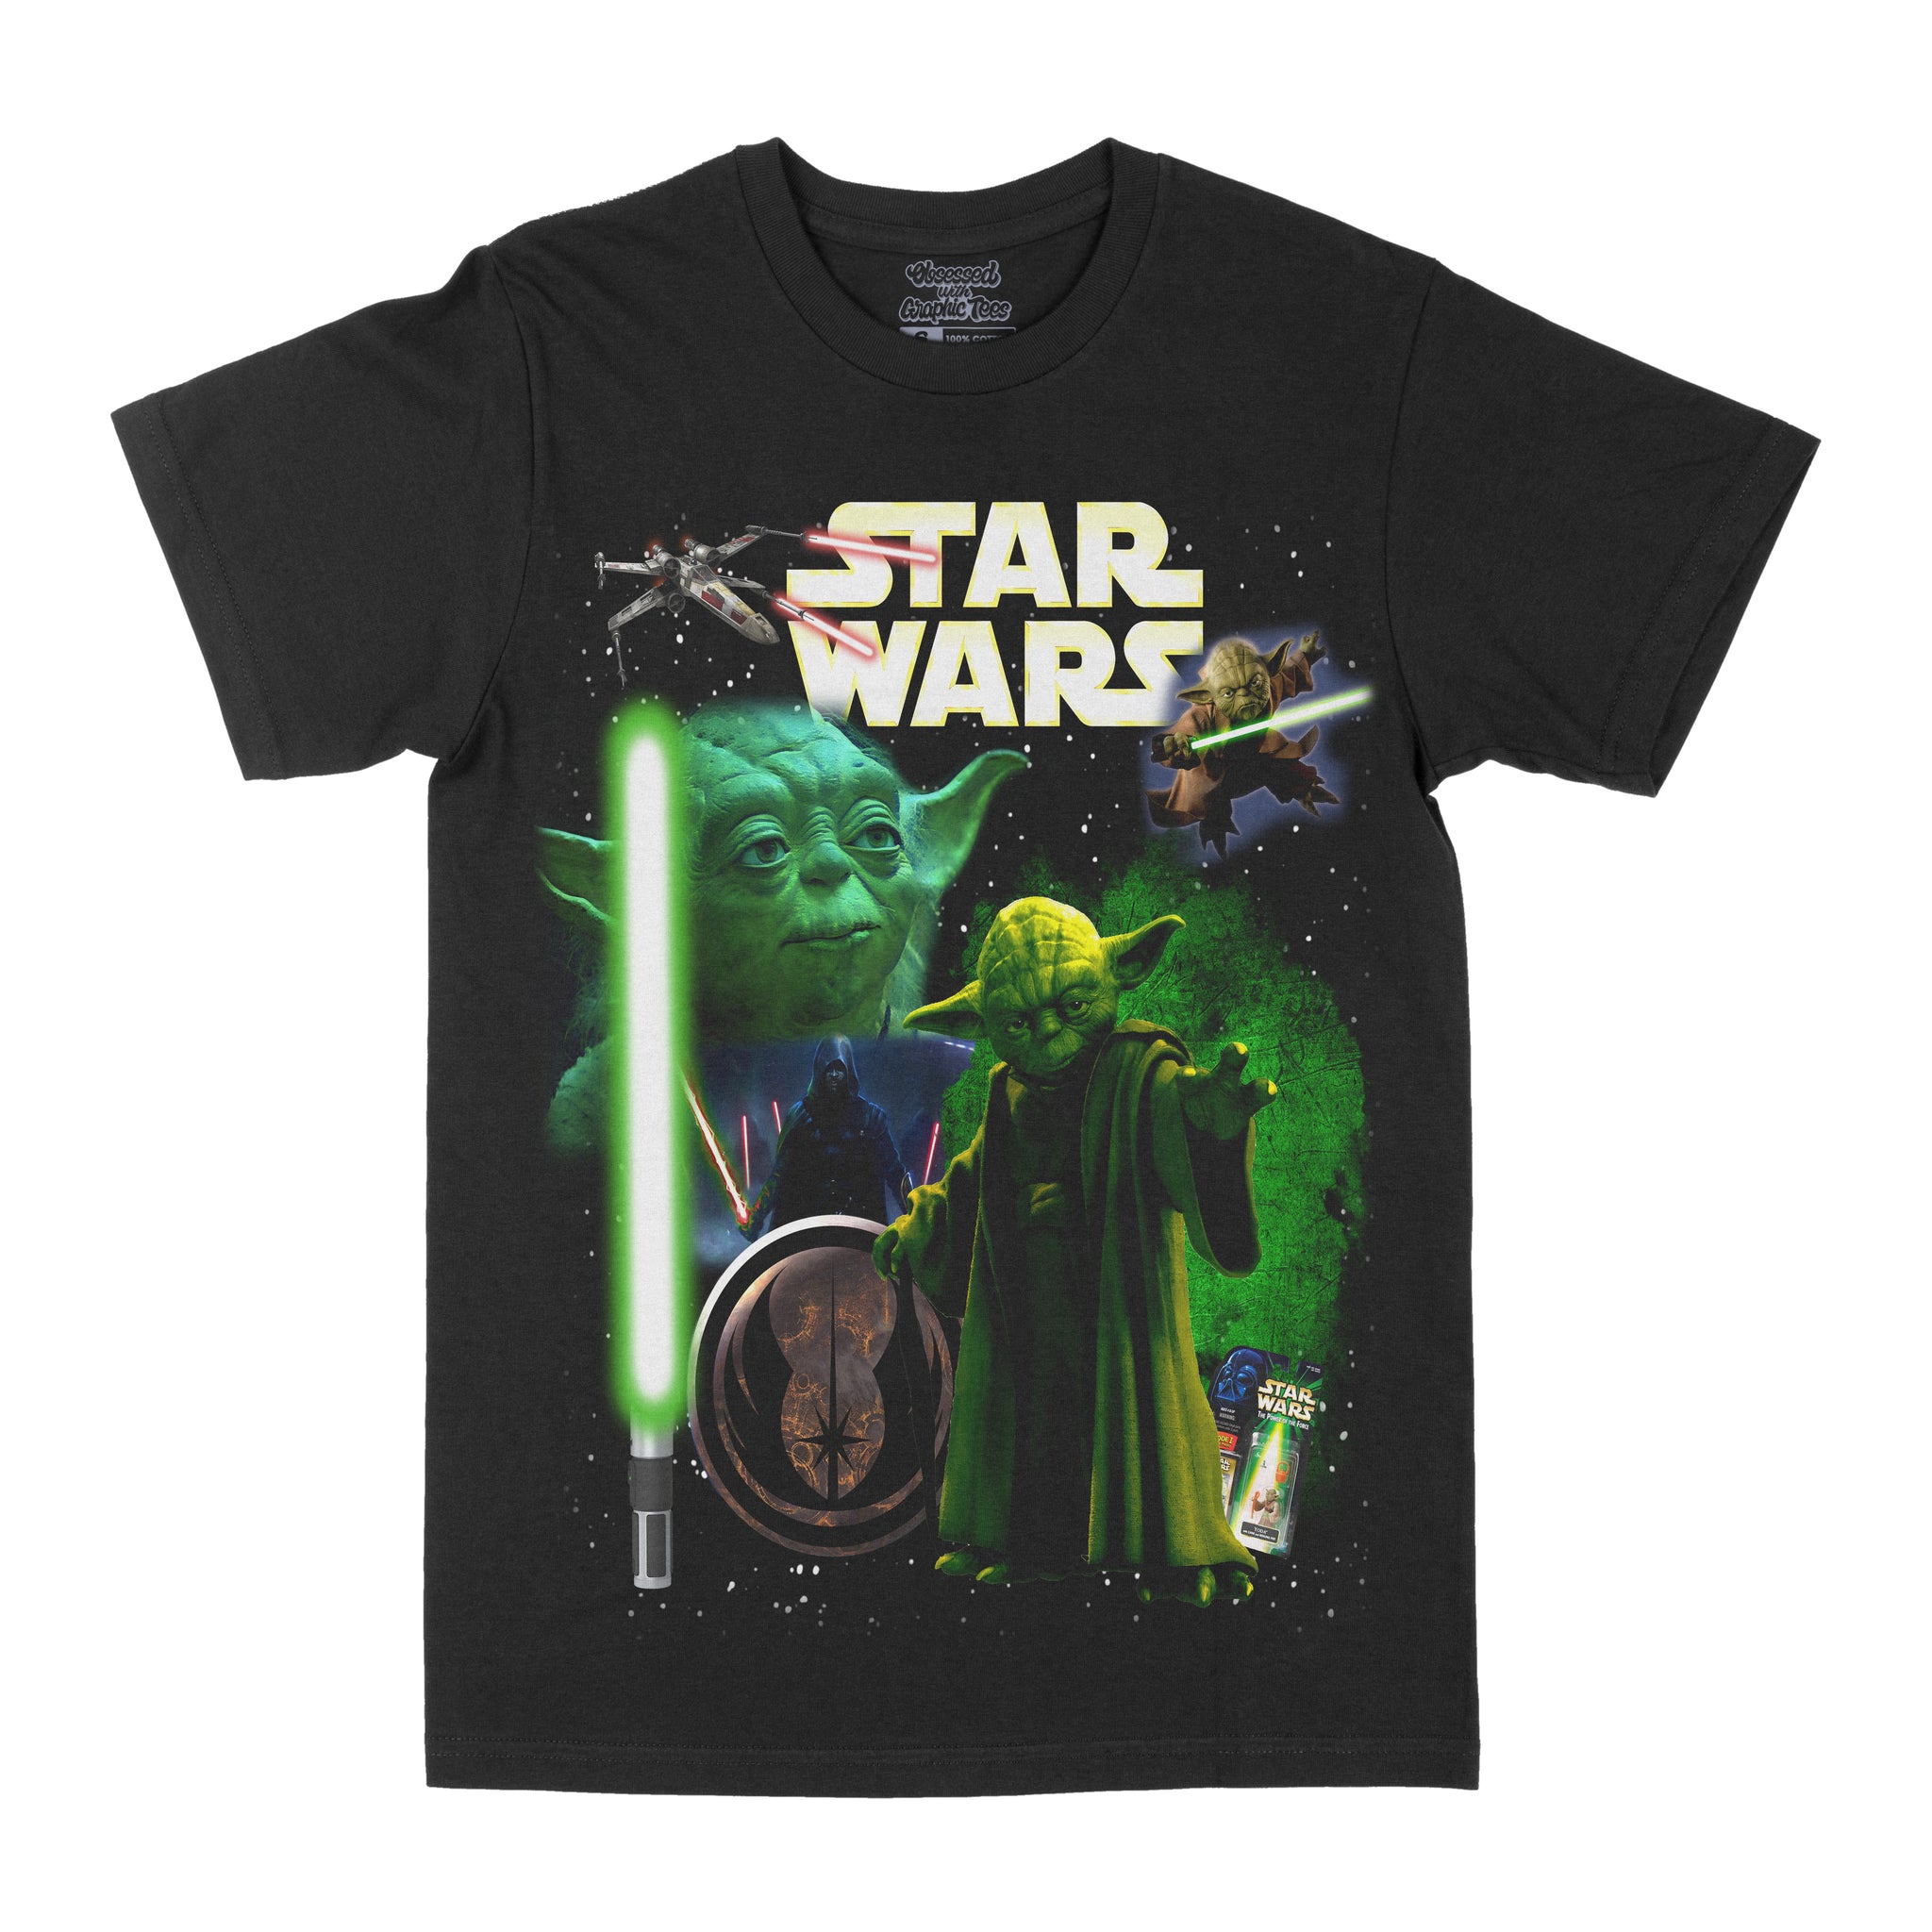 Star Wars "Yoda" Graphic Tee